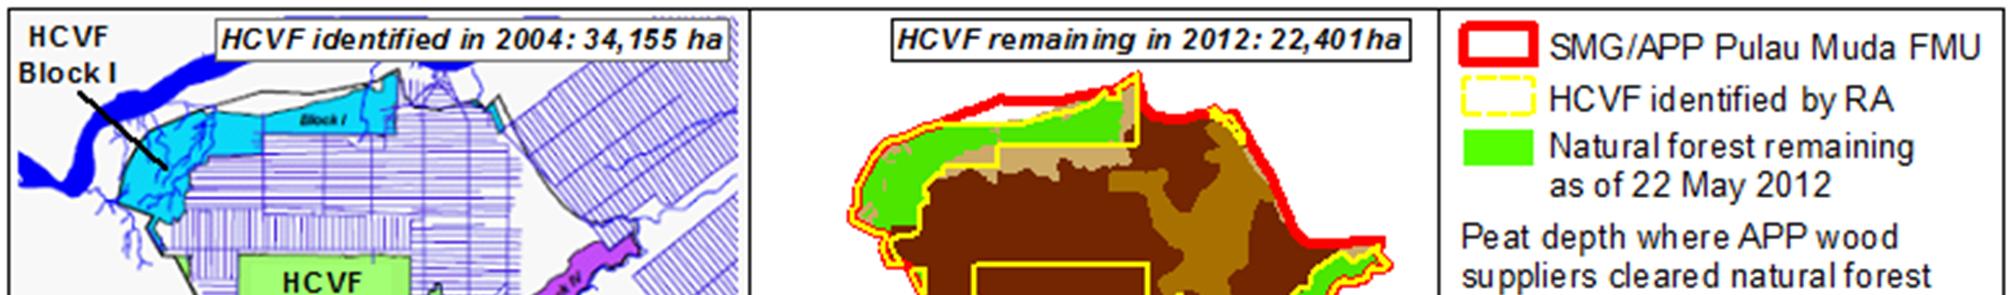 Citra satelit Landsat berkronologis menunjukkan bahwa pada 22 Mei 2012 APP sudah menghancurkan 1/3 (hampir 12.000 hektar) hutan HCVF dimana perusahaan telah berkomitmen untuk melindunginya (Peta 2).